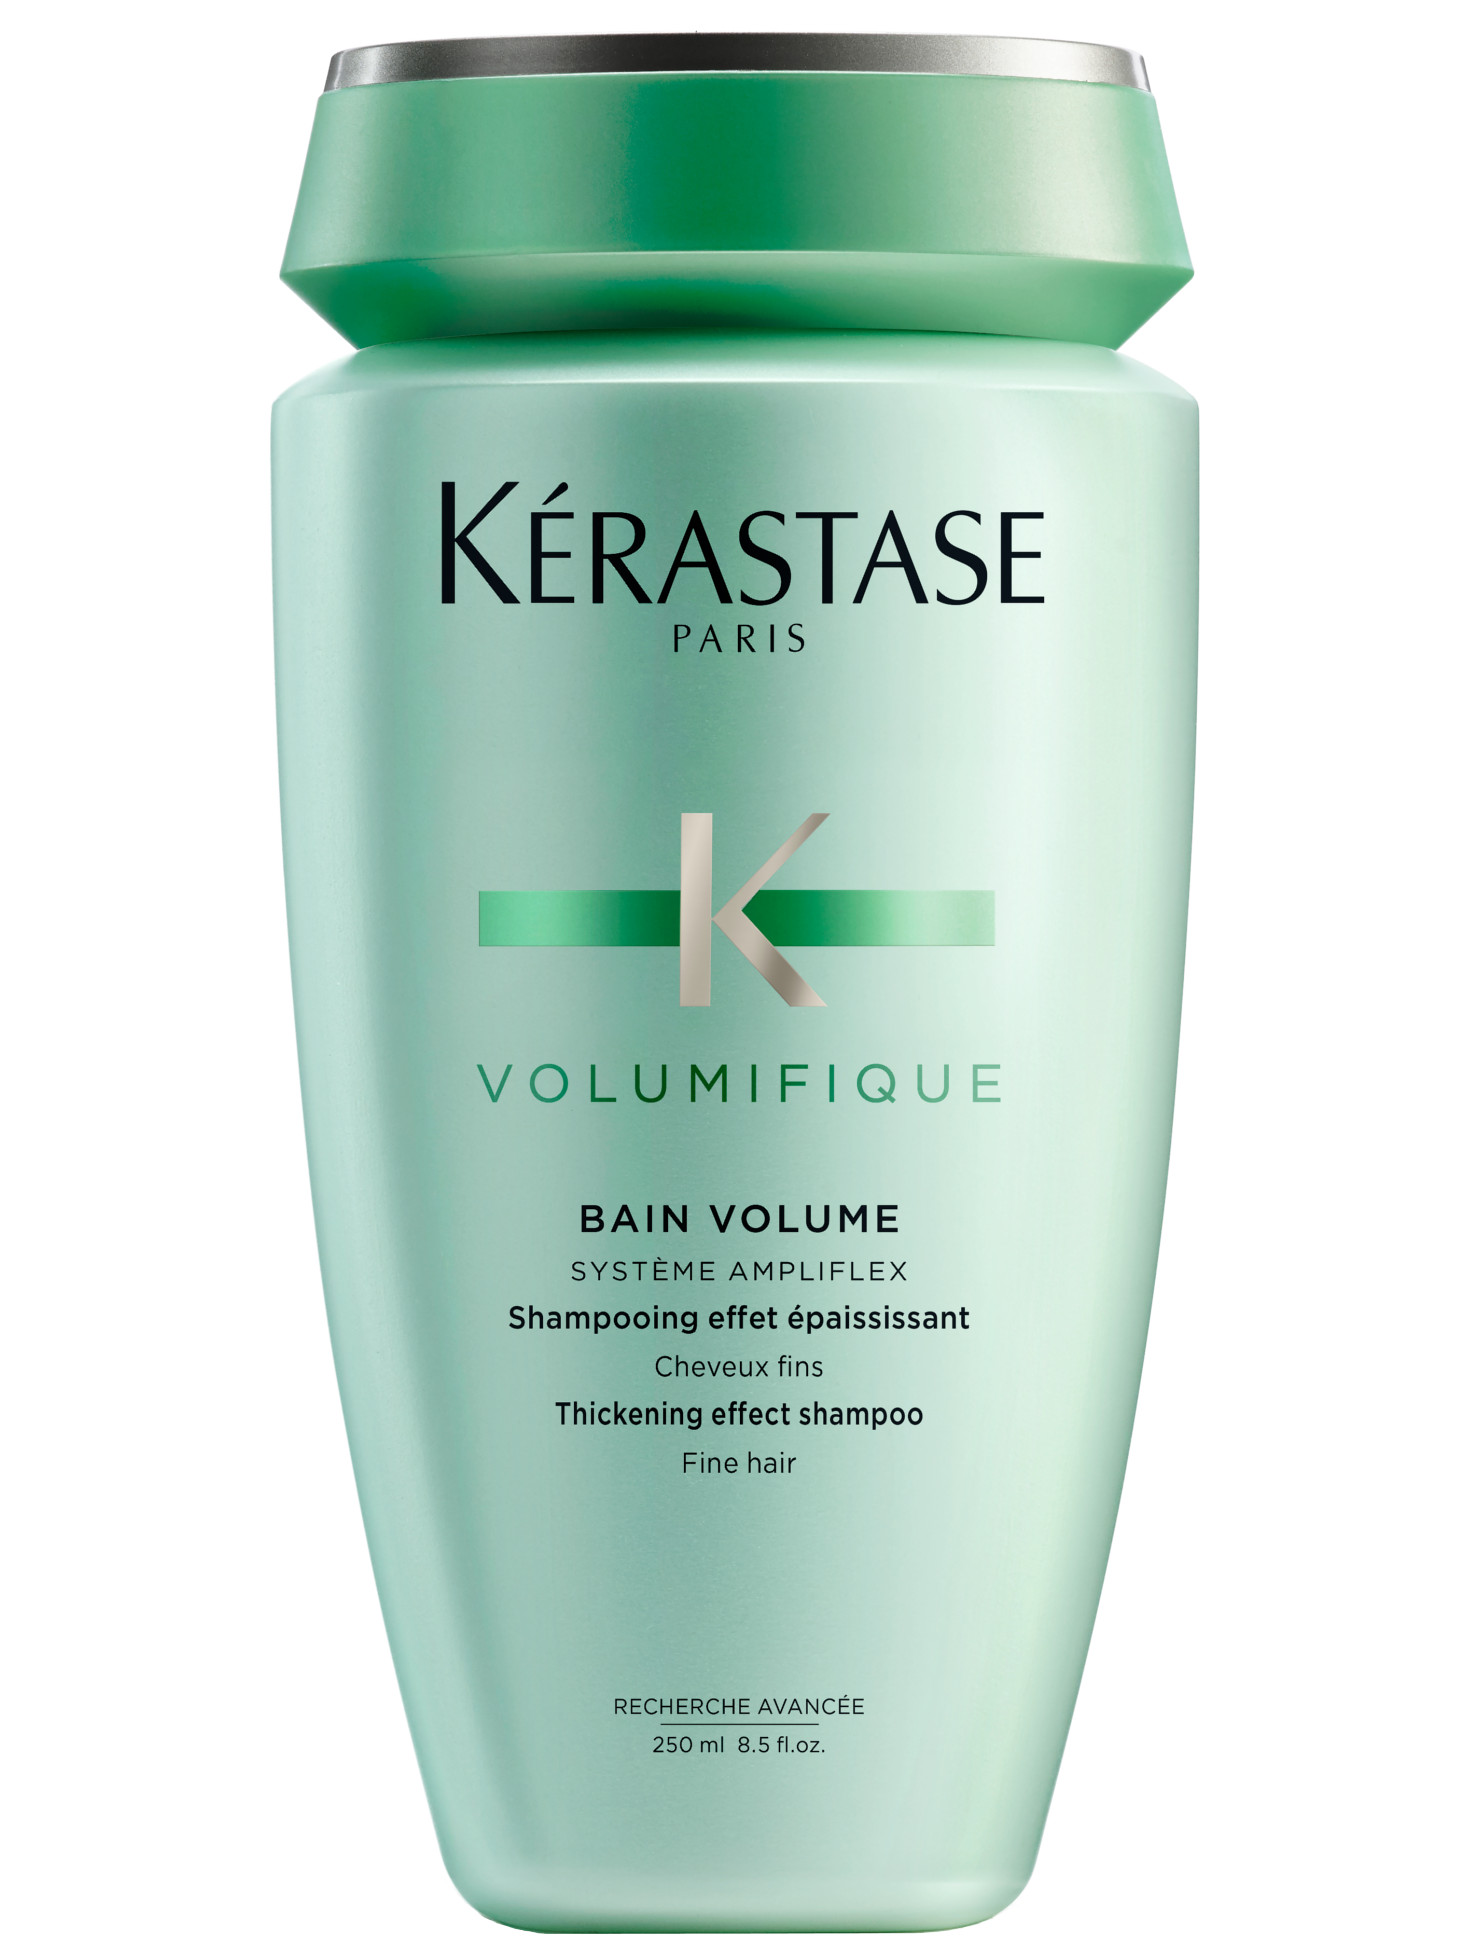 Šampon pro objem jemných vlasů Kérastase Volumifique - 250 ml + DÁREK ZDARMA